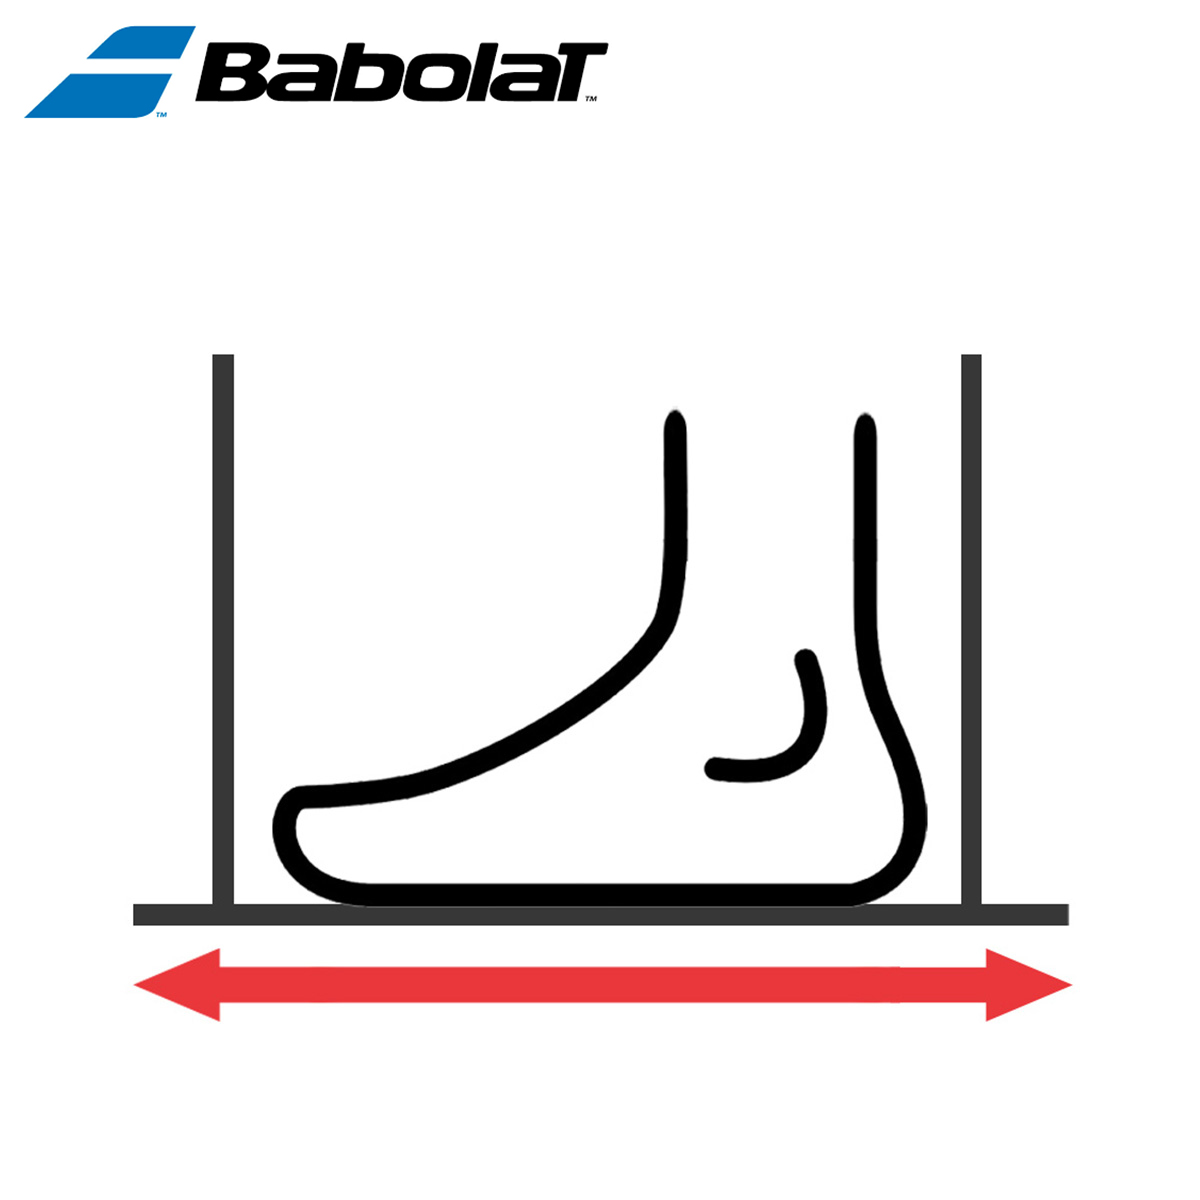 Babolat Shoe Size Chart